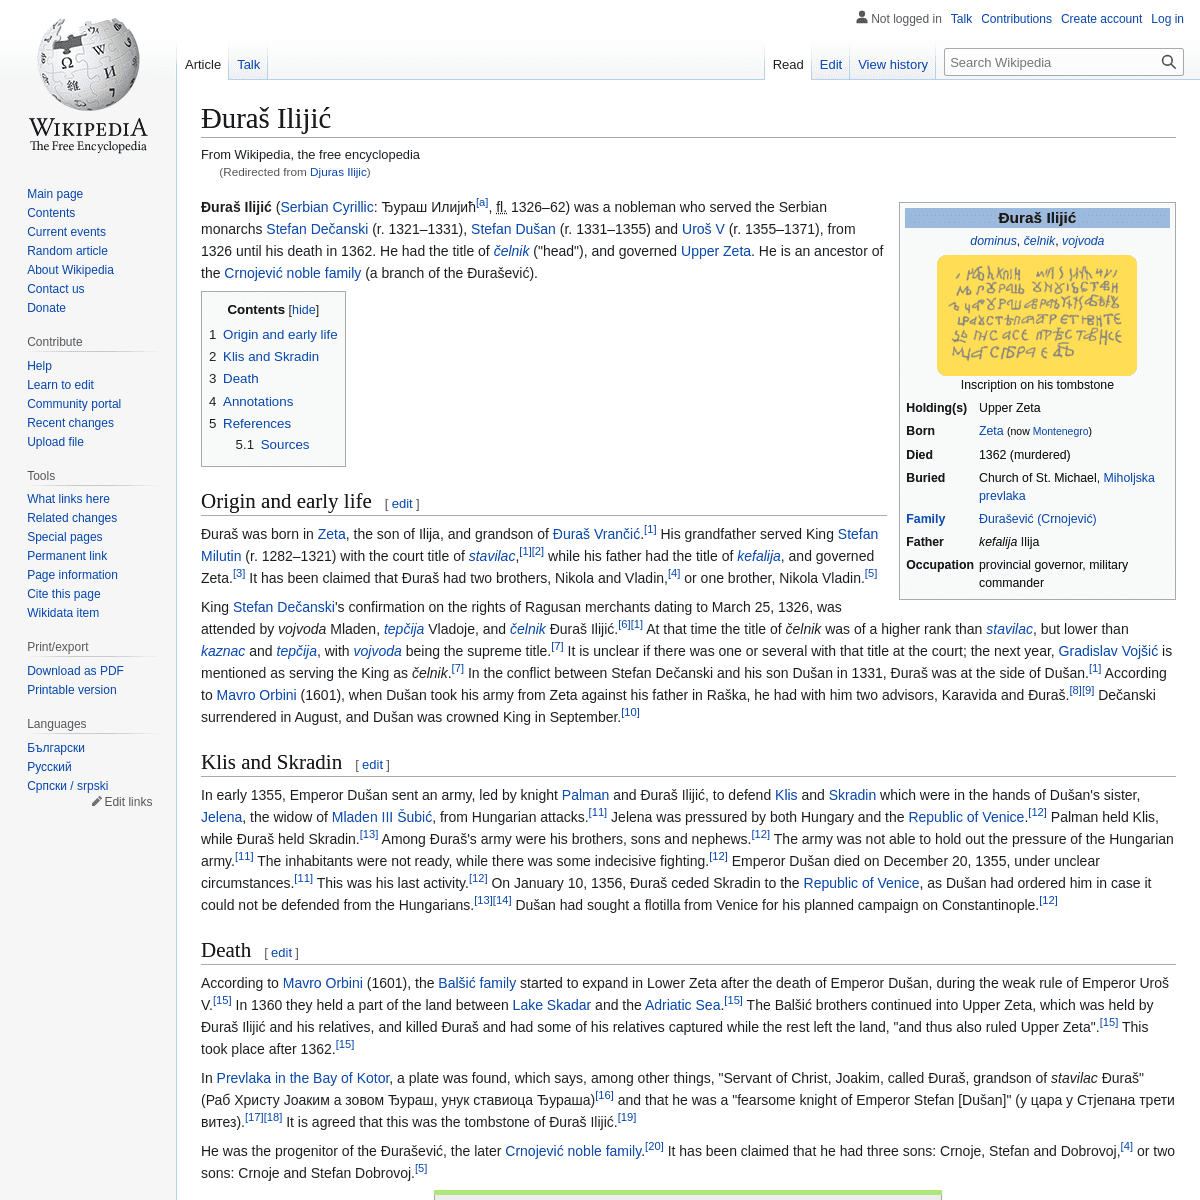 A complete backup of https://en.wikipedia.org/wiki/Djuras_Ilijic